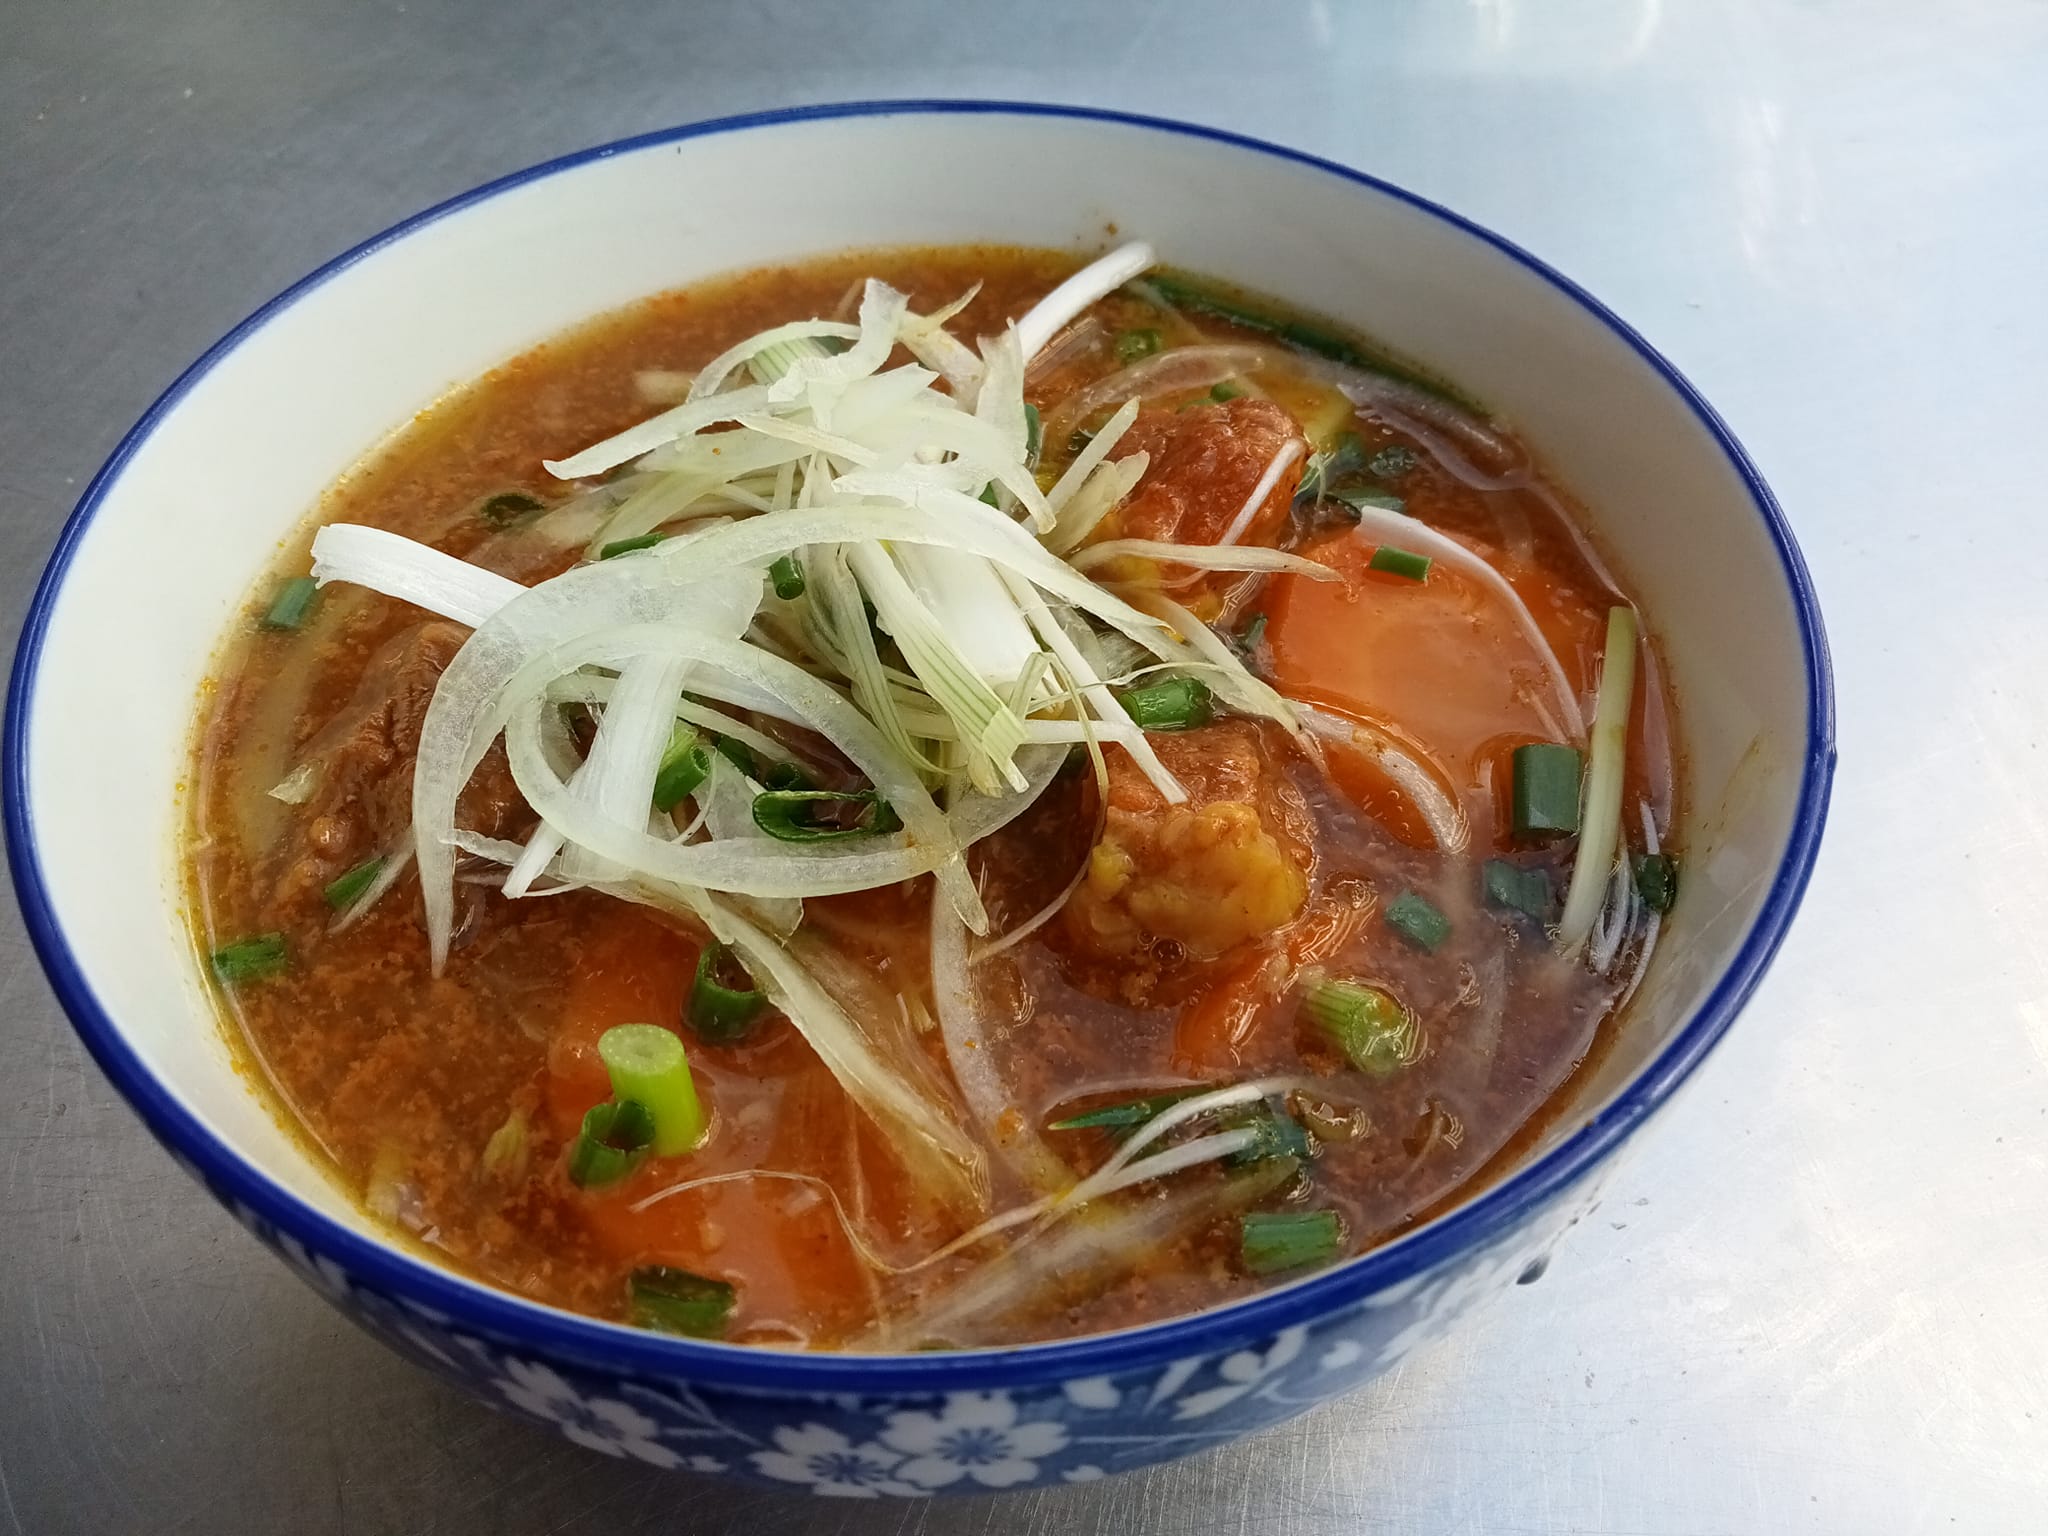 Bò kho Nha Trang